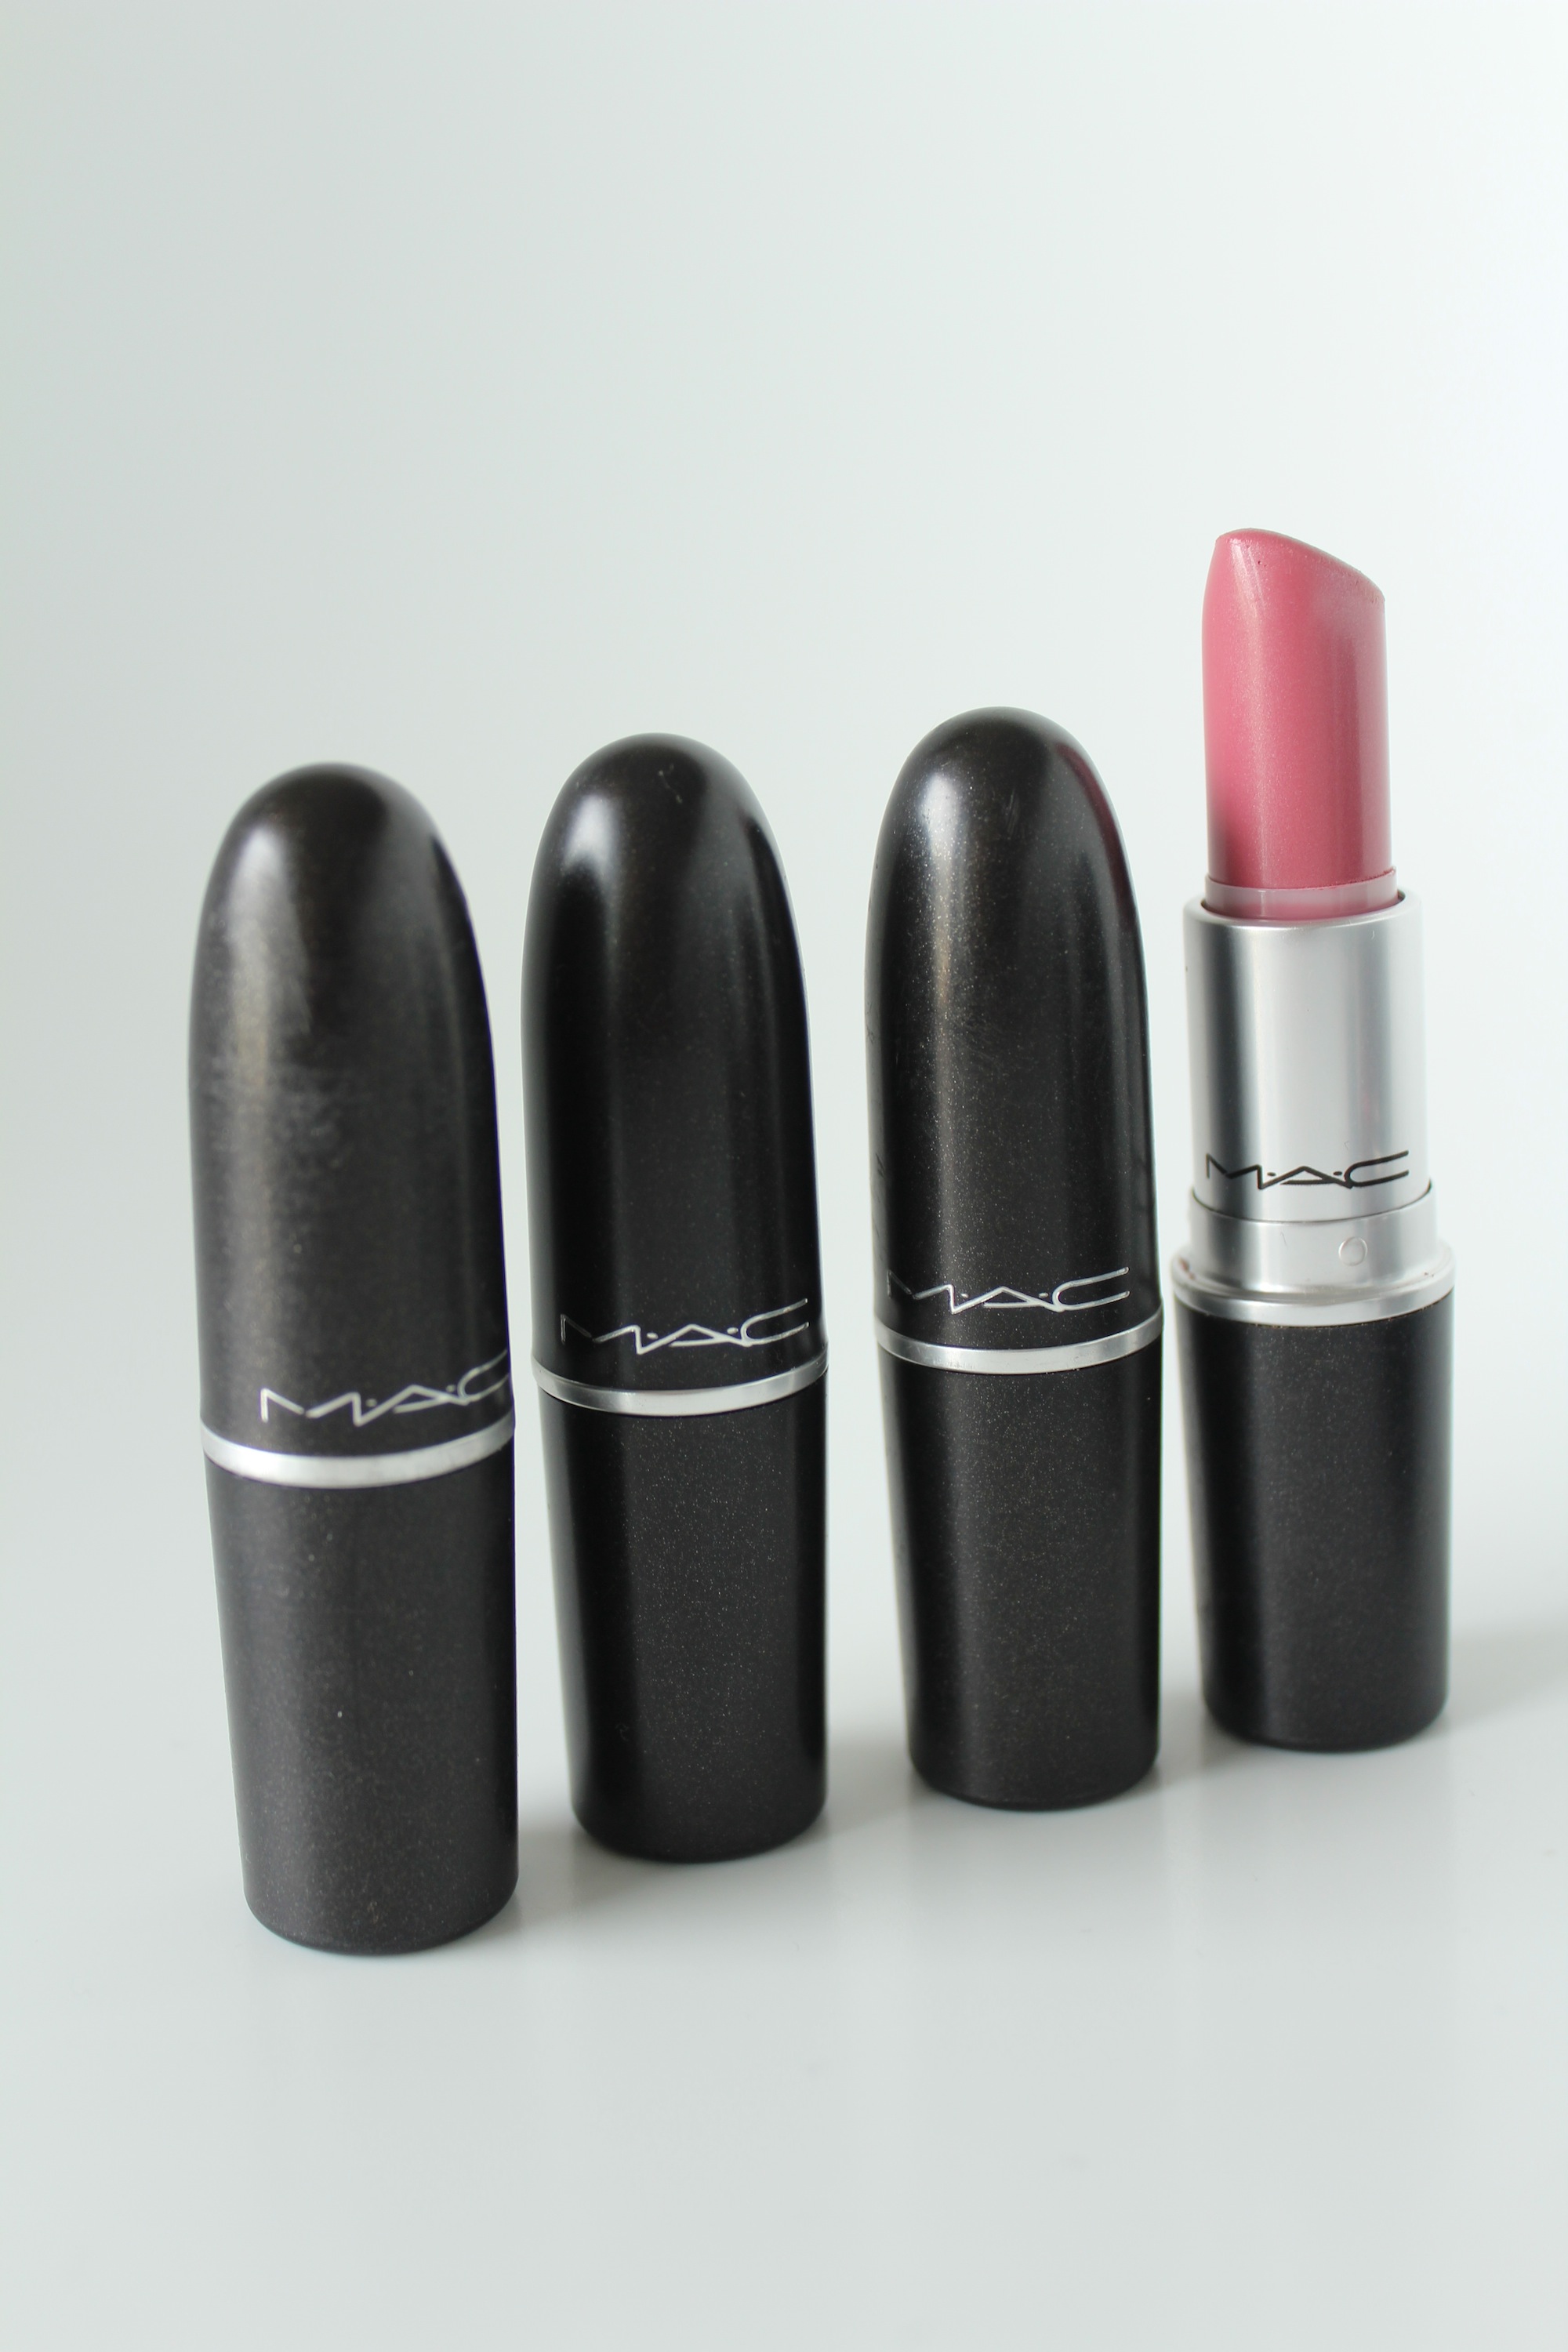 Mac Hot Gossip Lipstick.